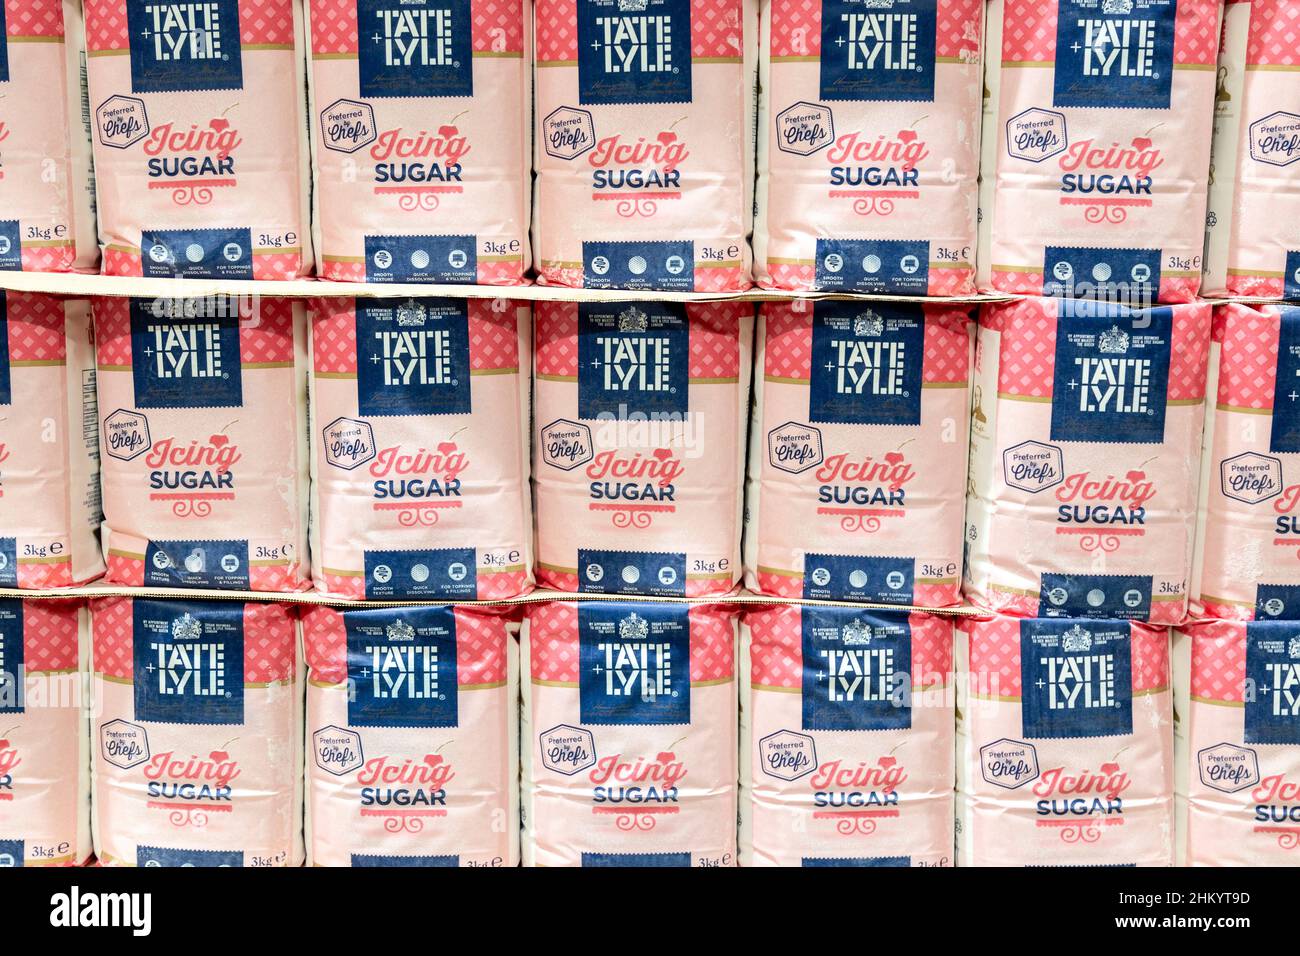 Päckchen Tate & Lyle Icing Sugar in einem Supermarkt Stockfoto